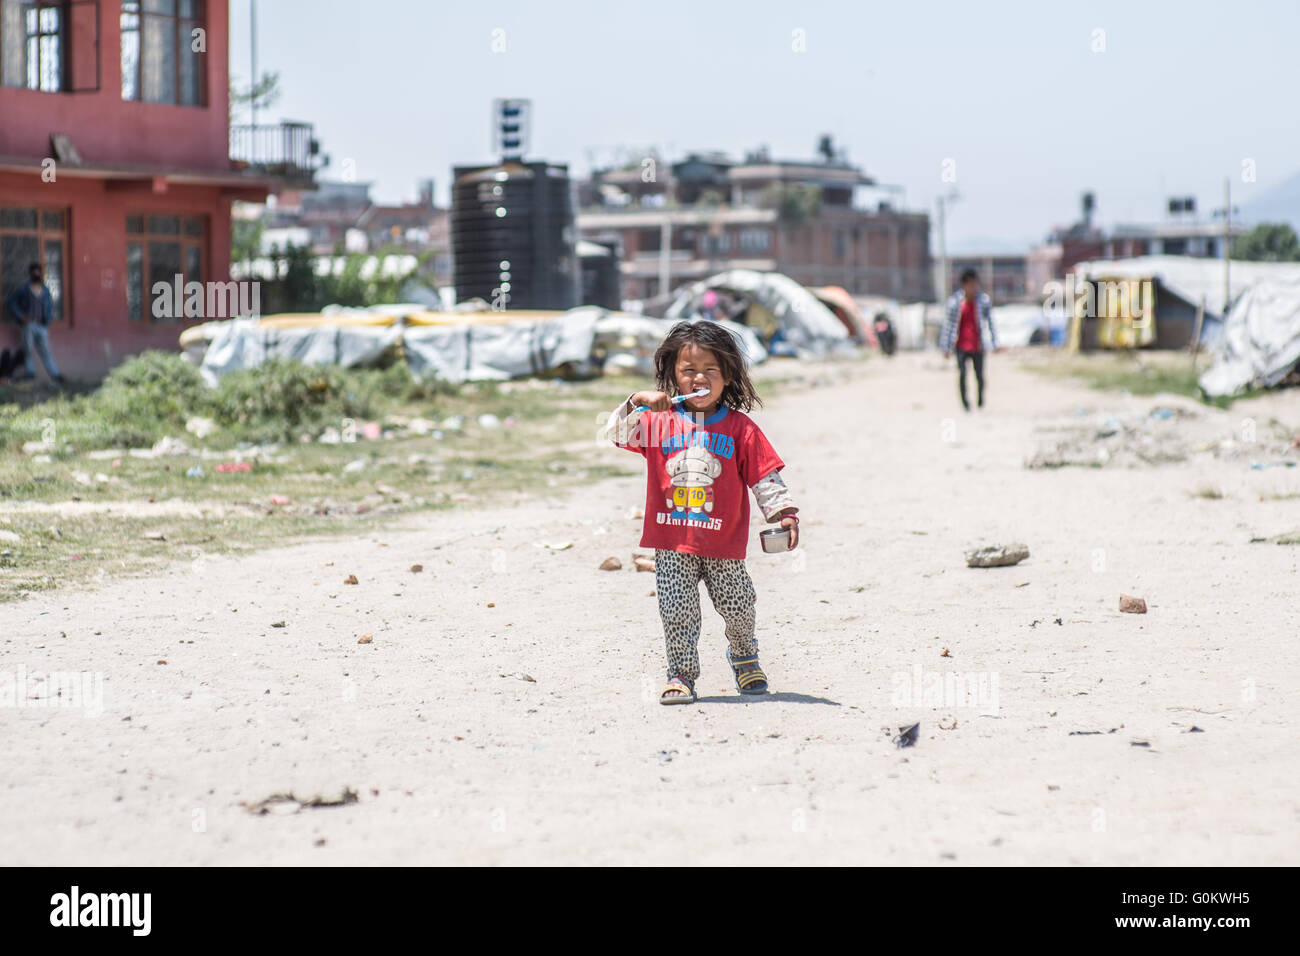 Ein Kind auf dem Weg in eine "Kinder spielen Tag" in einem Camp für Familien, die während des Erdbebens von 2015 in Nepal obdachlos geworden Stockfoto